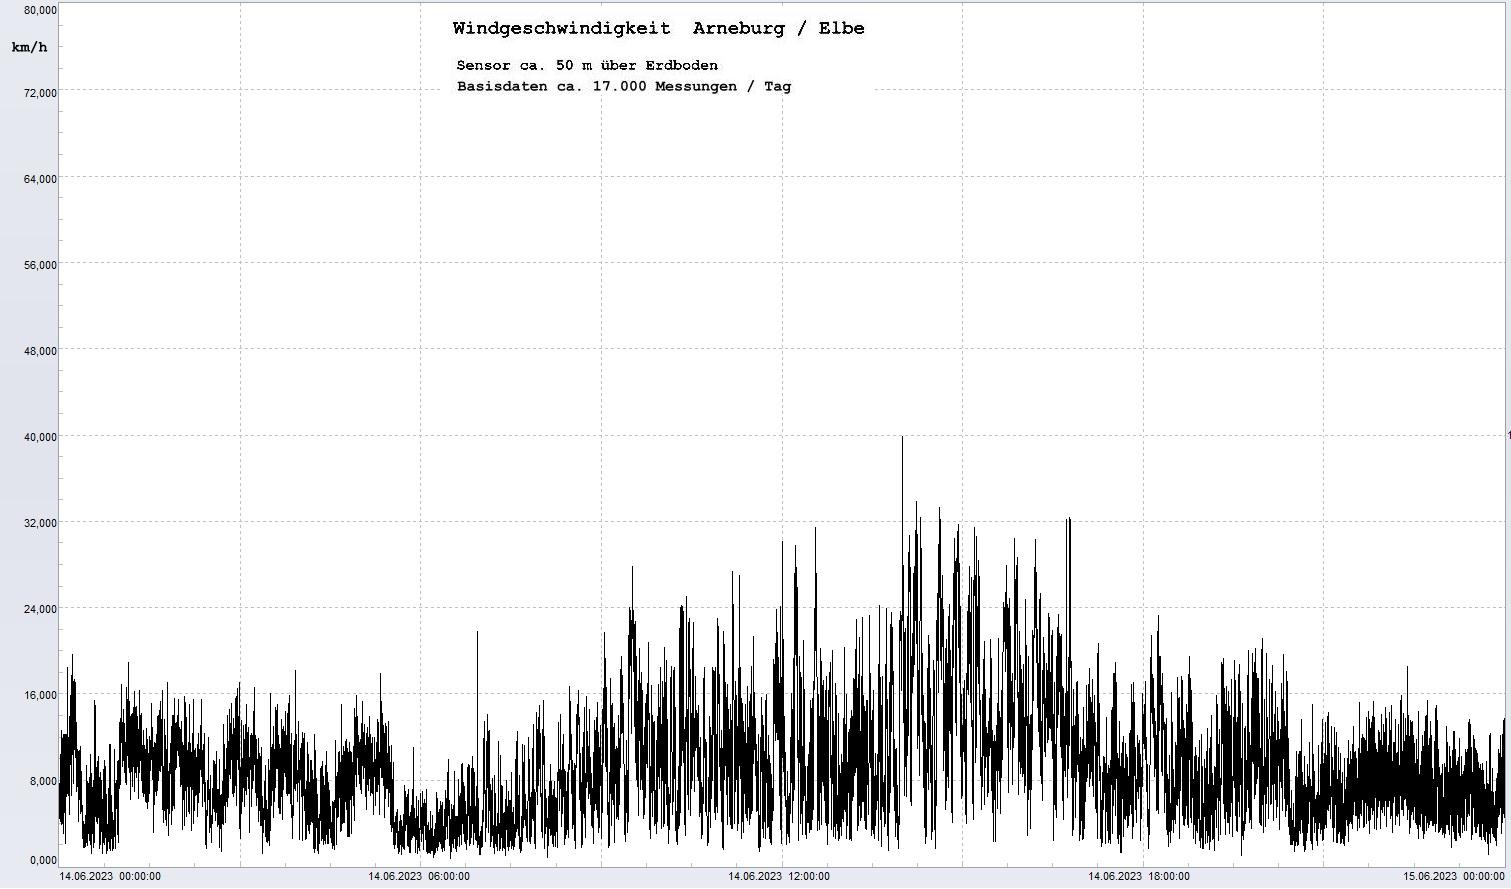 Arneburg Tages-Diagramm Winddaten, 14.06.2023
  Diagramm, Sensor auf Gebäude, ca. 50 m über Erdboden, Basis: 5s-Aufzeichnung